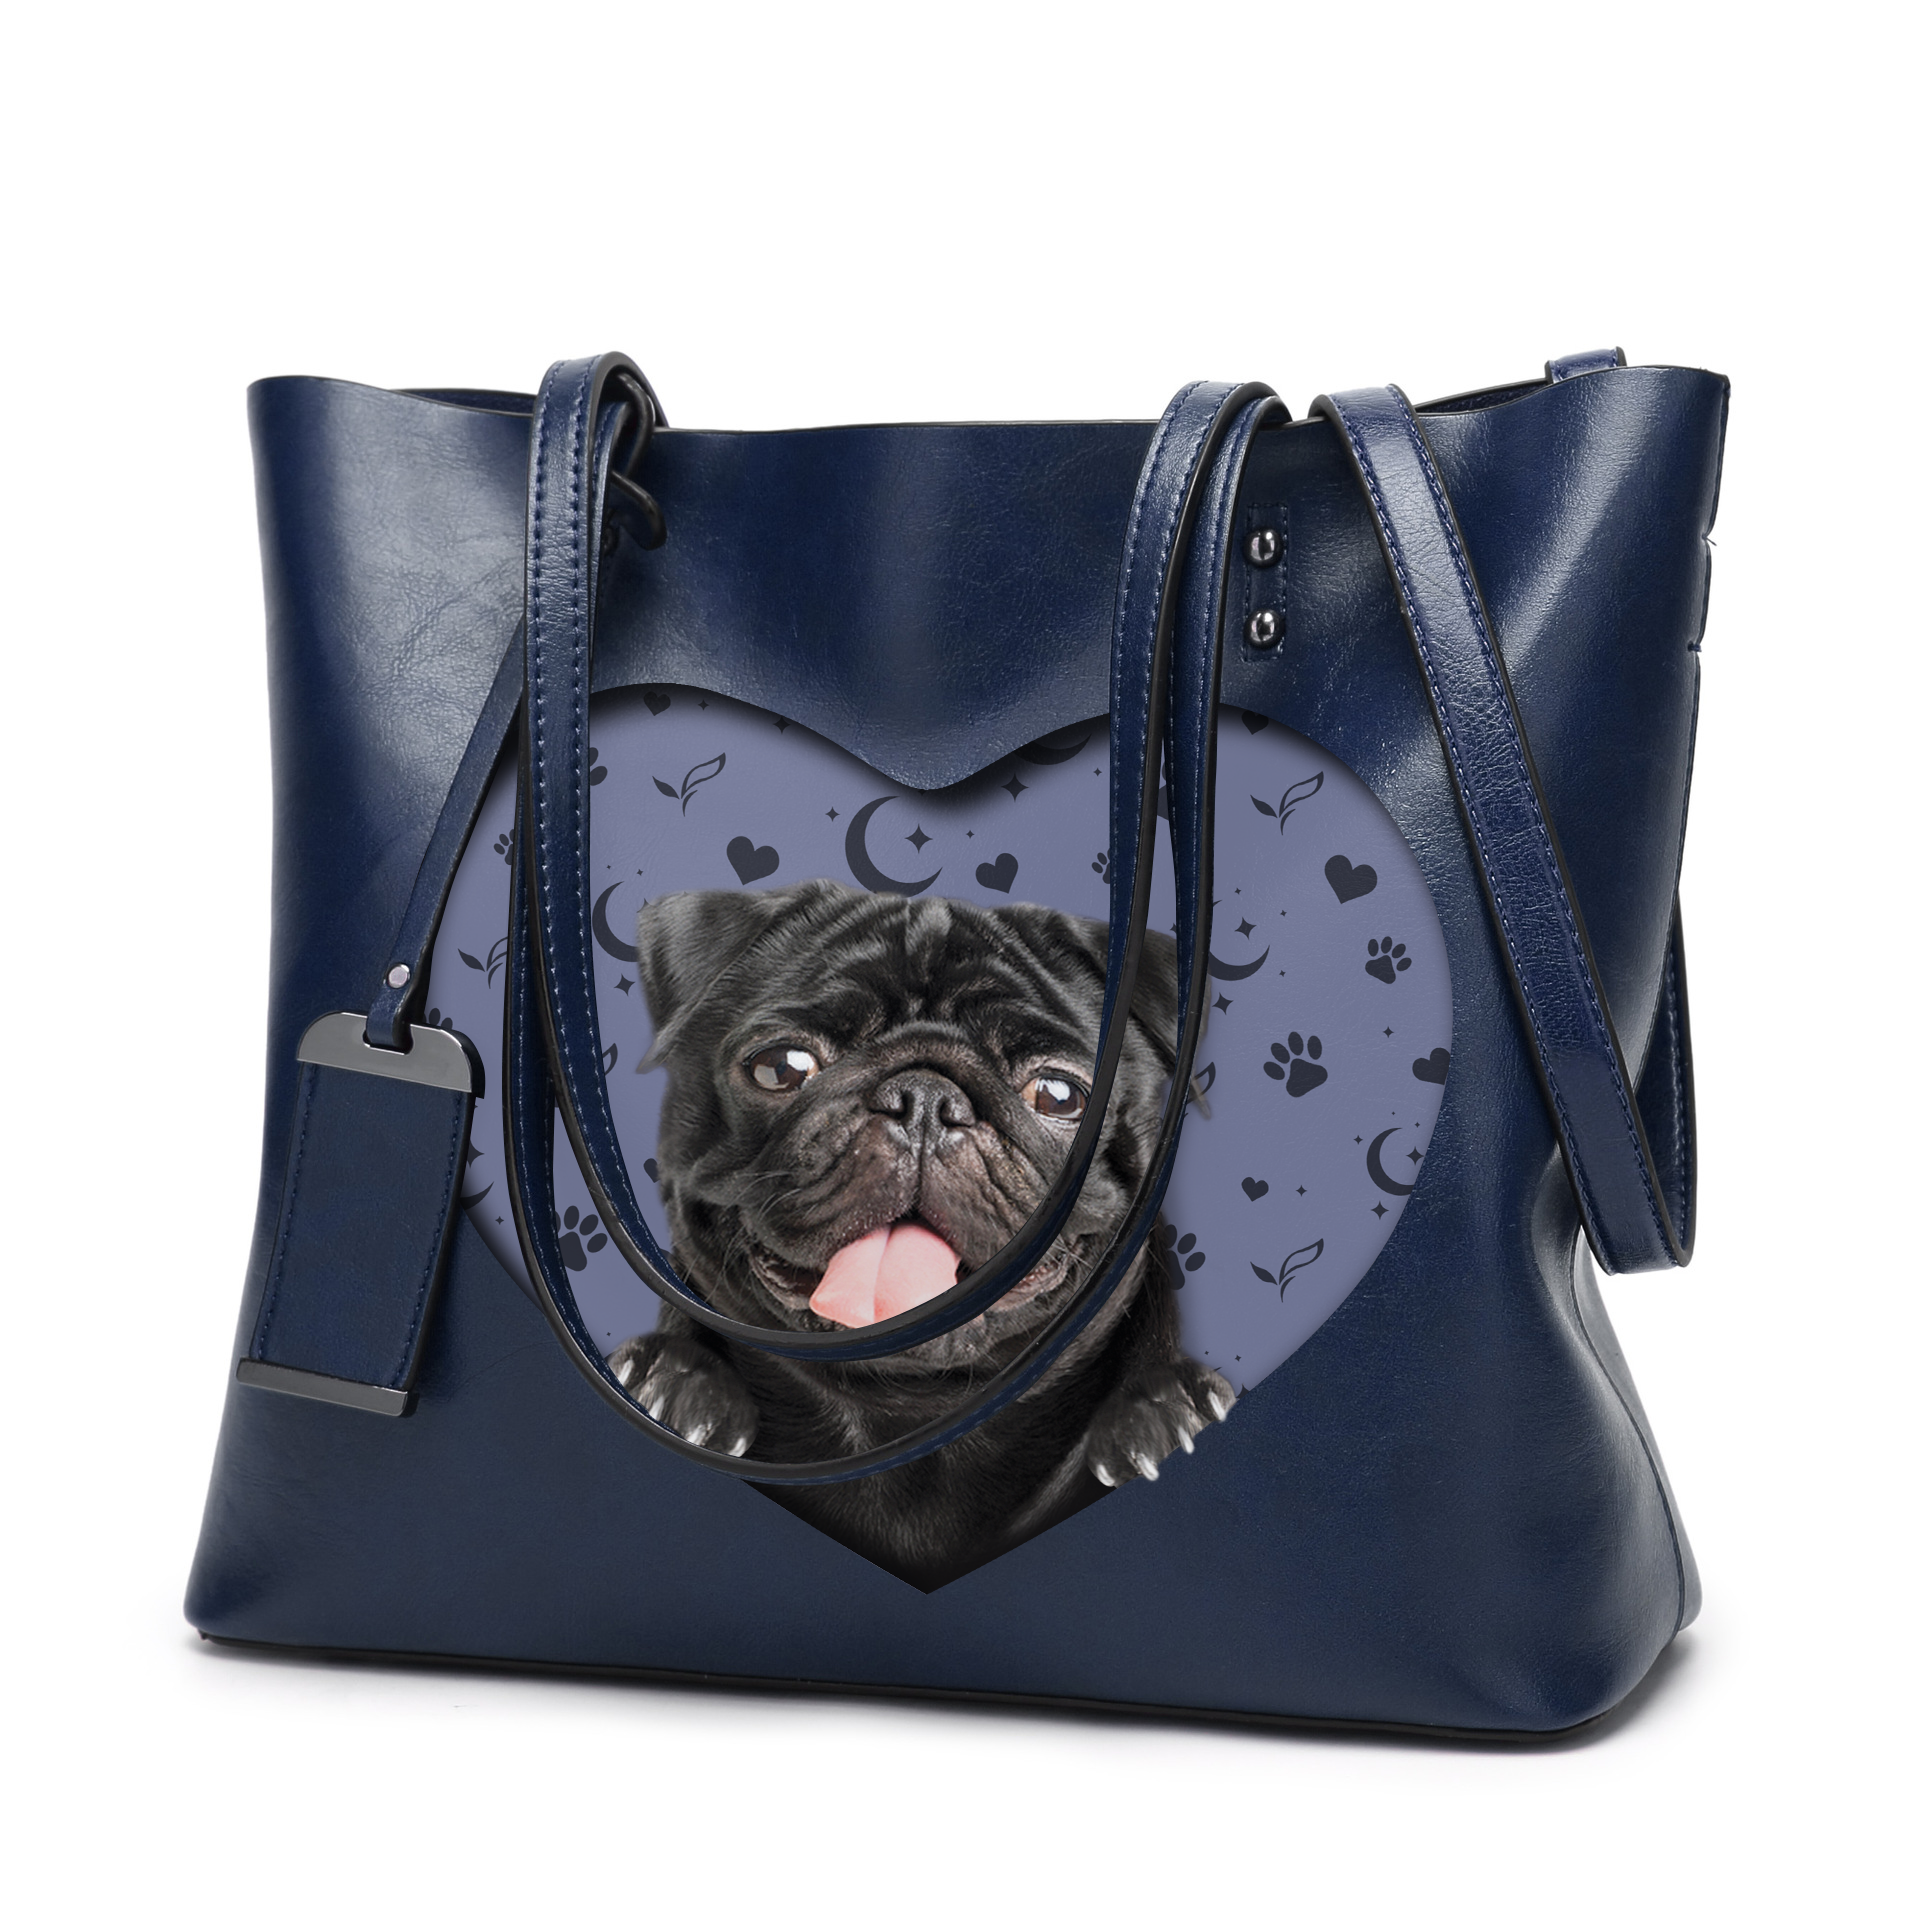 I Know I'm Cute - Pug Glamour Handbag V2 - 12